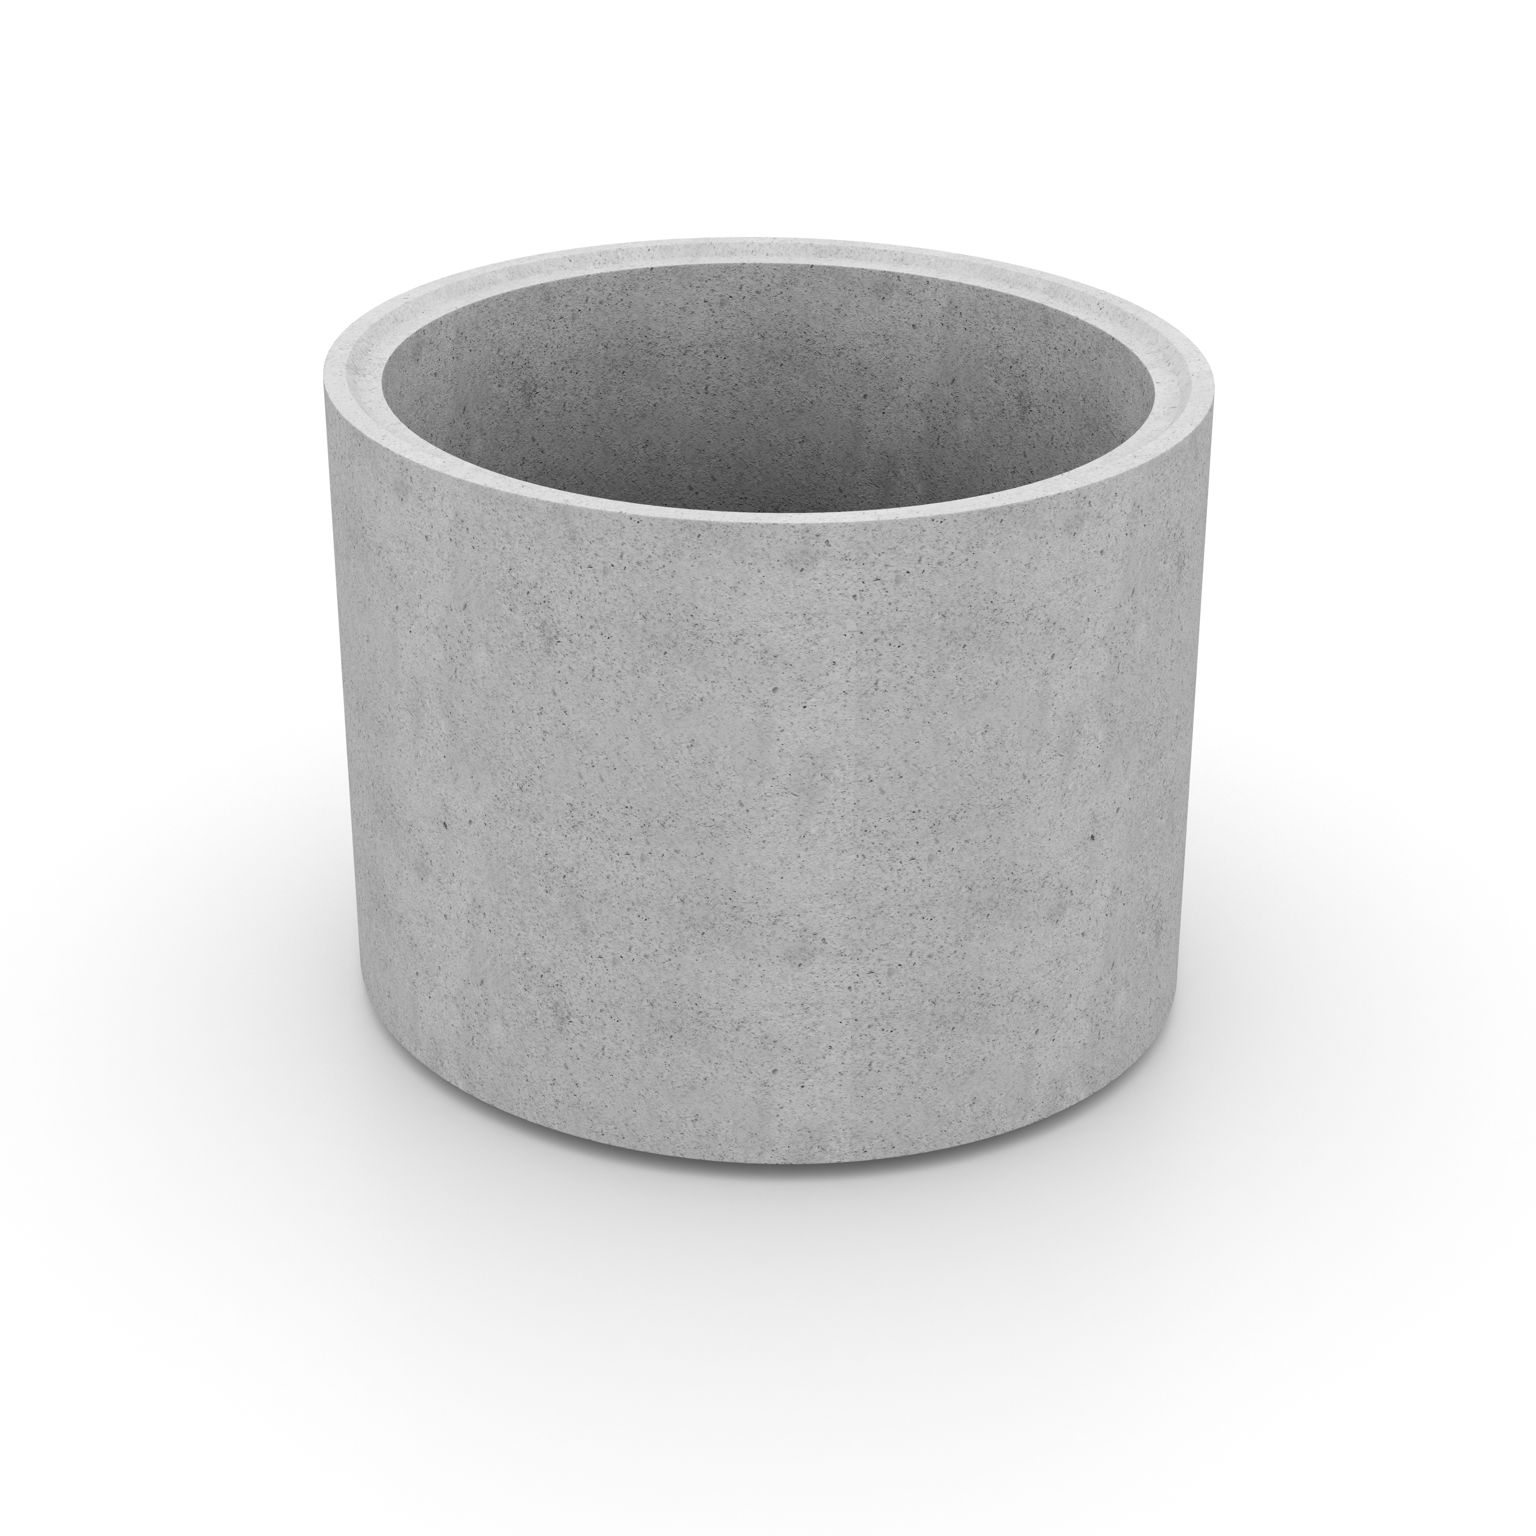 Produktbild av en cementfogad brunnsring i formatet: 1200x1000 mm